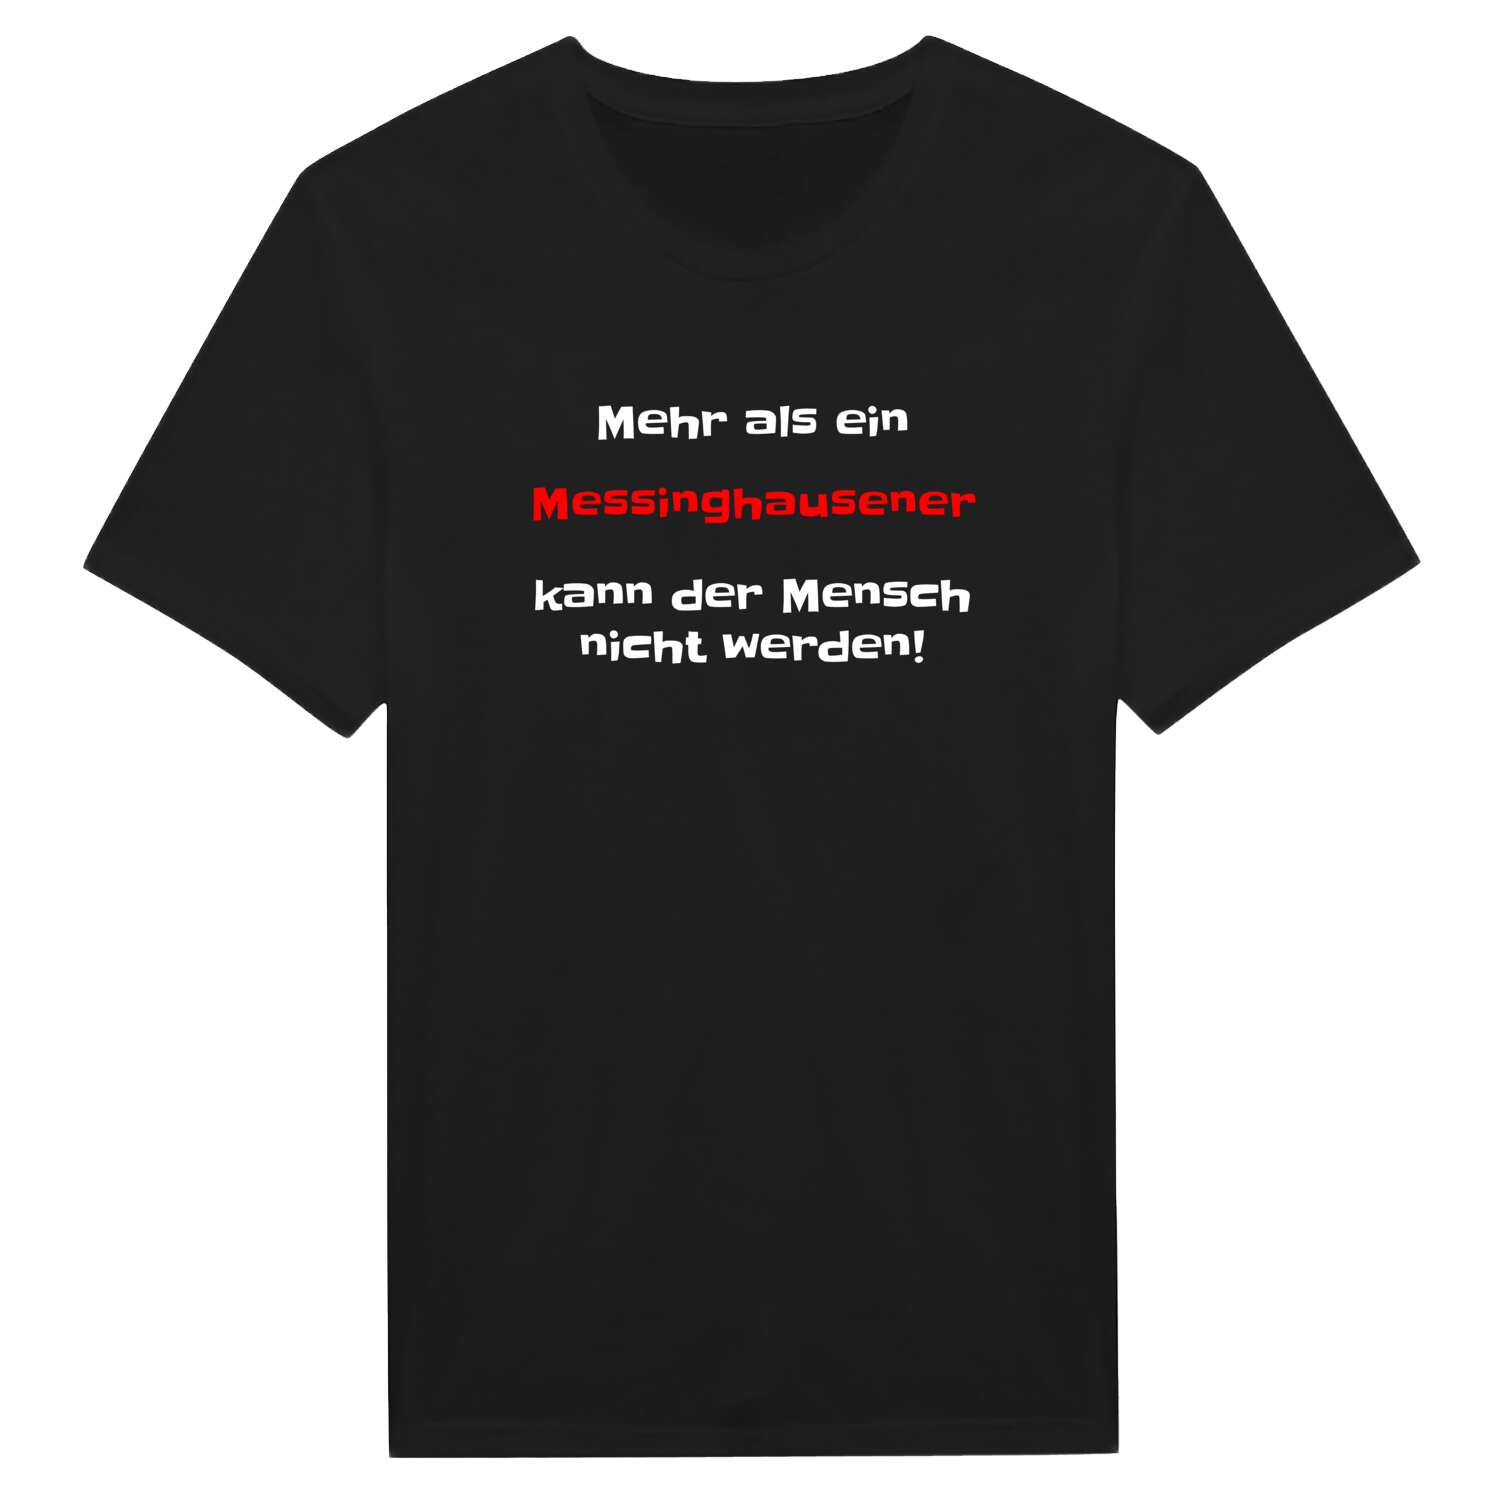 Messinghausen T-Shirt »Mehr als ein«